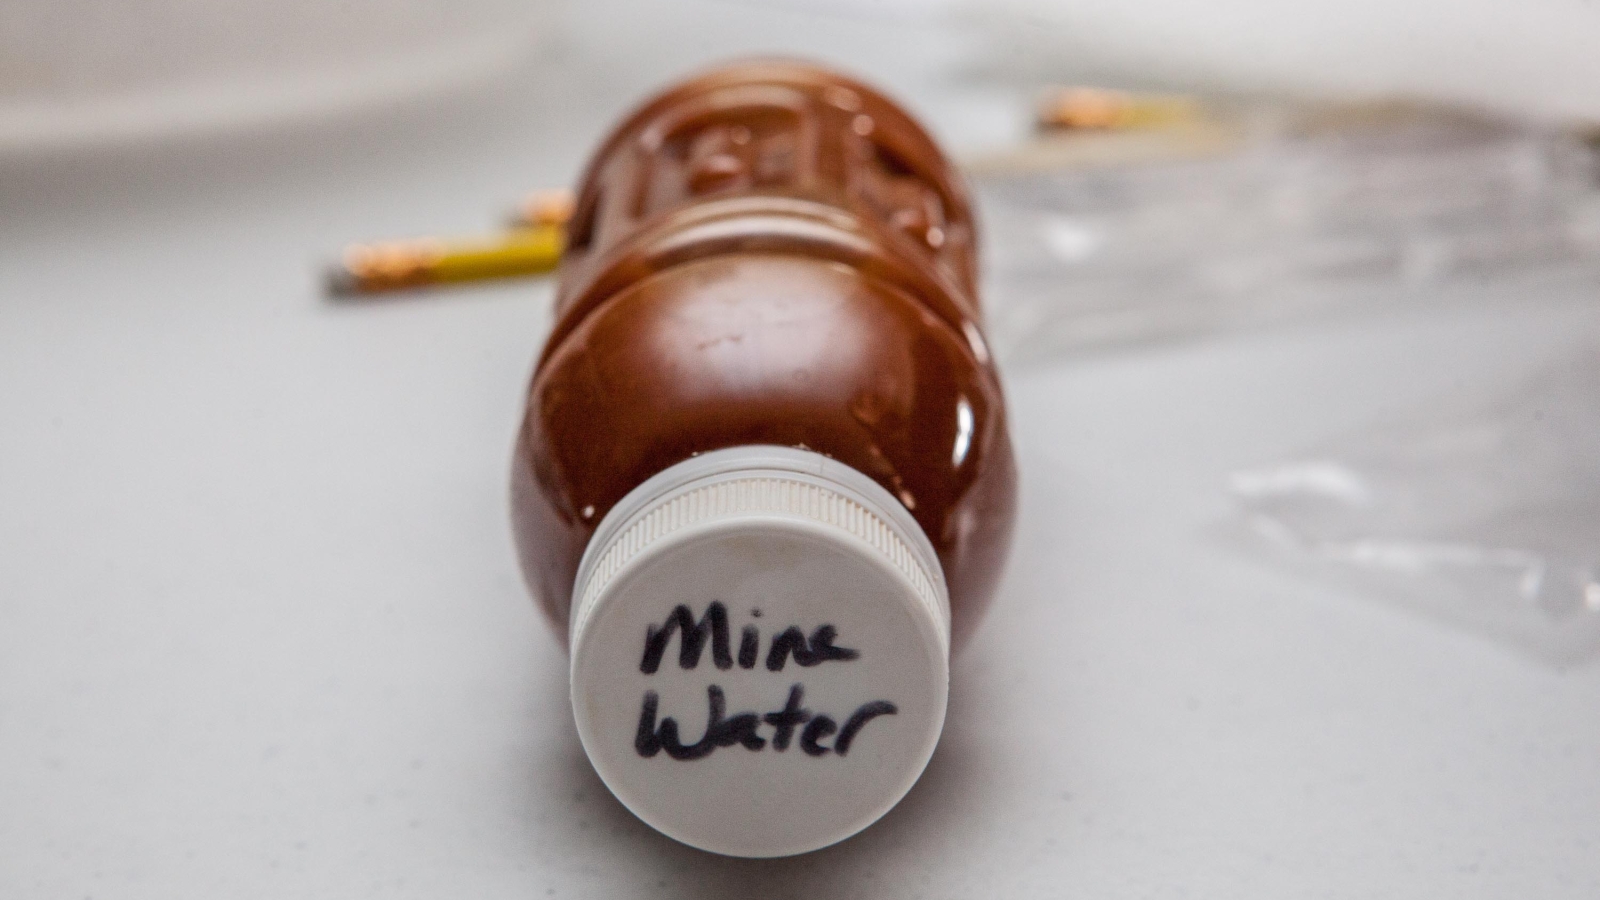 Mine water in a bottle